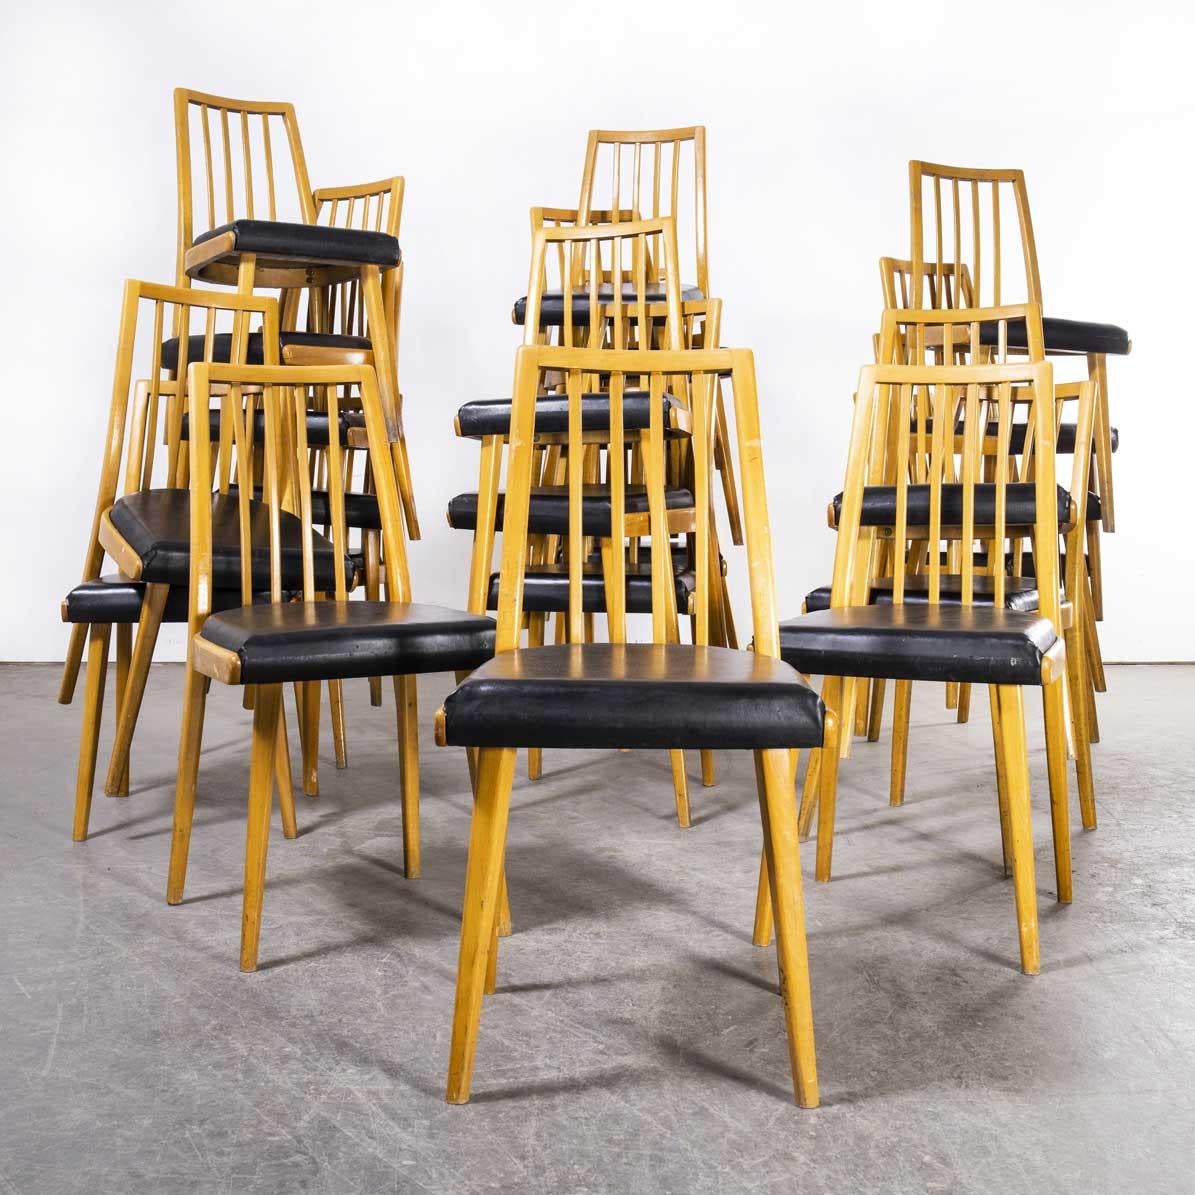 chaises de salle à manger rembourrées du milieu des années 1960 par Interier Praha - différentes quantités disponibles
chaises de salle à manger rembourrées du milieu des années 1960 par Interier Praha - différentes quantités disponibles. Produit